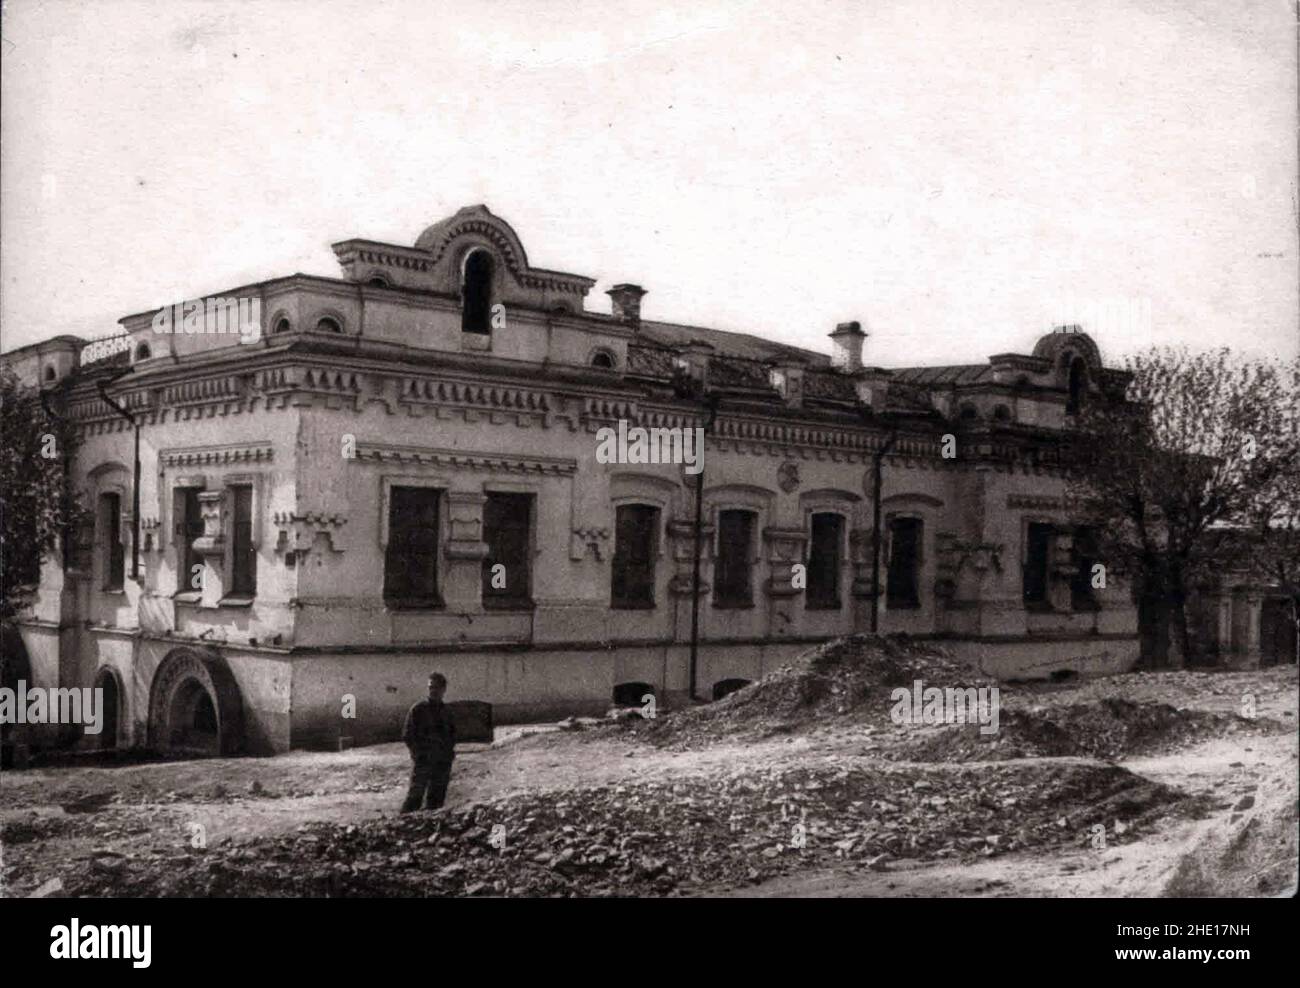 Una foto del 1928 della Casa di Ipatiev dove si tenne la famiglia Romanov prima della loro esecuzione nel luglio 1918. La casa fu lasciata vuota e divenne un fuoco di attenzione pro-royalty. Fu demolita nel 1977. Foto Stock